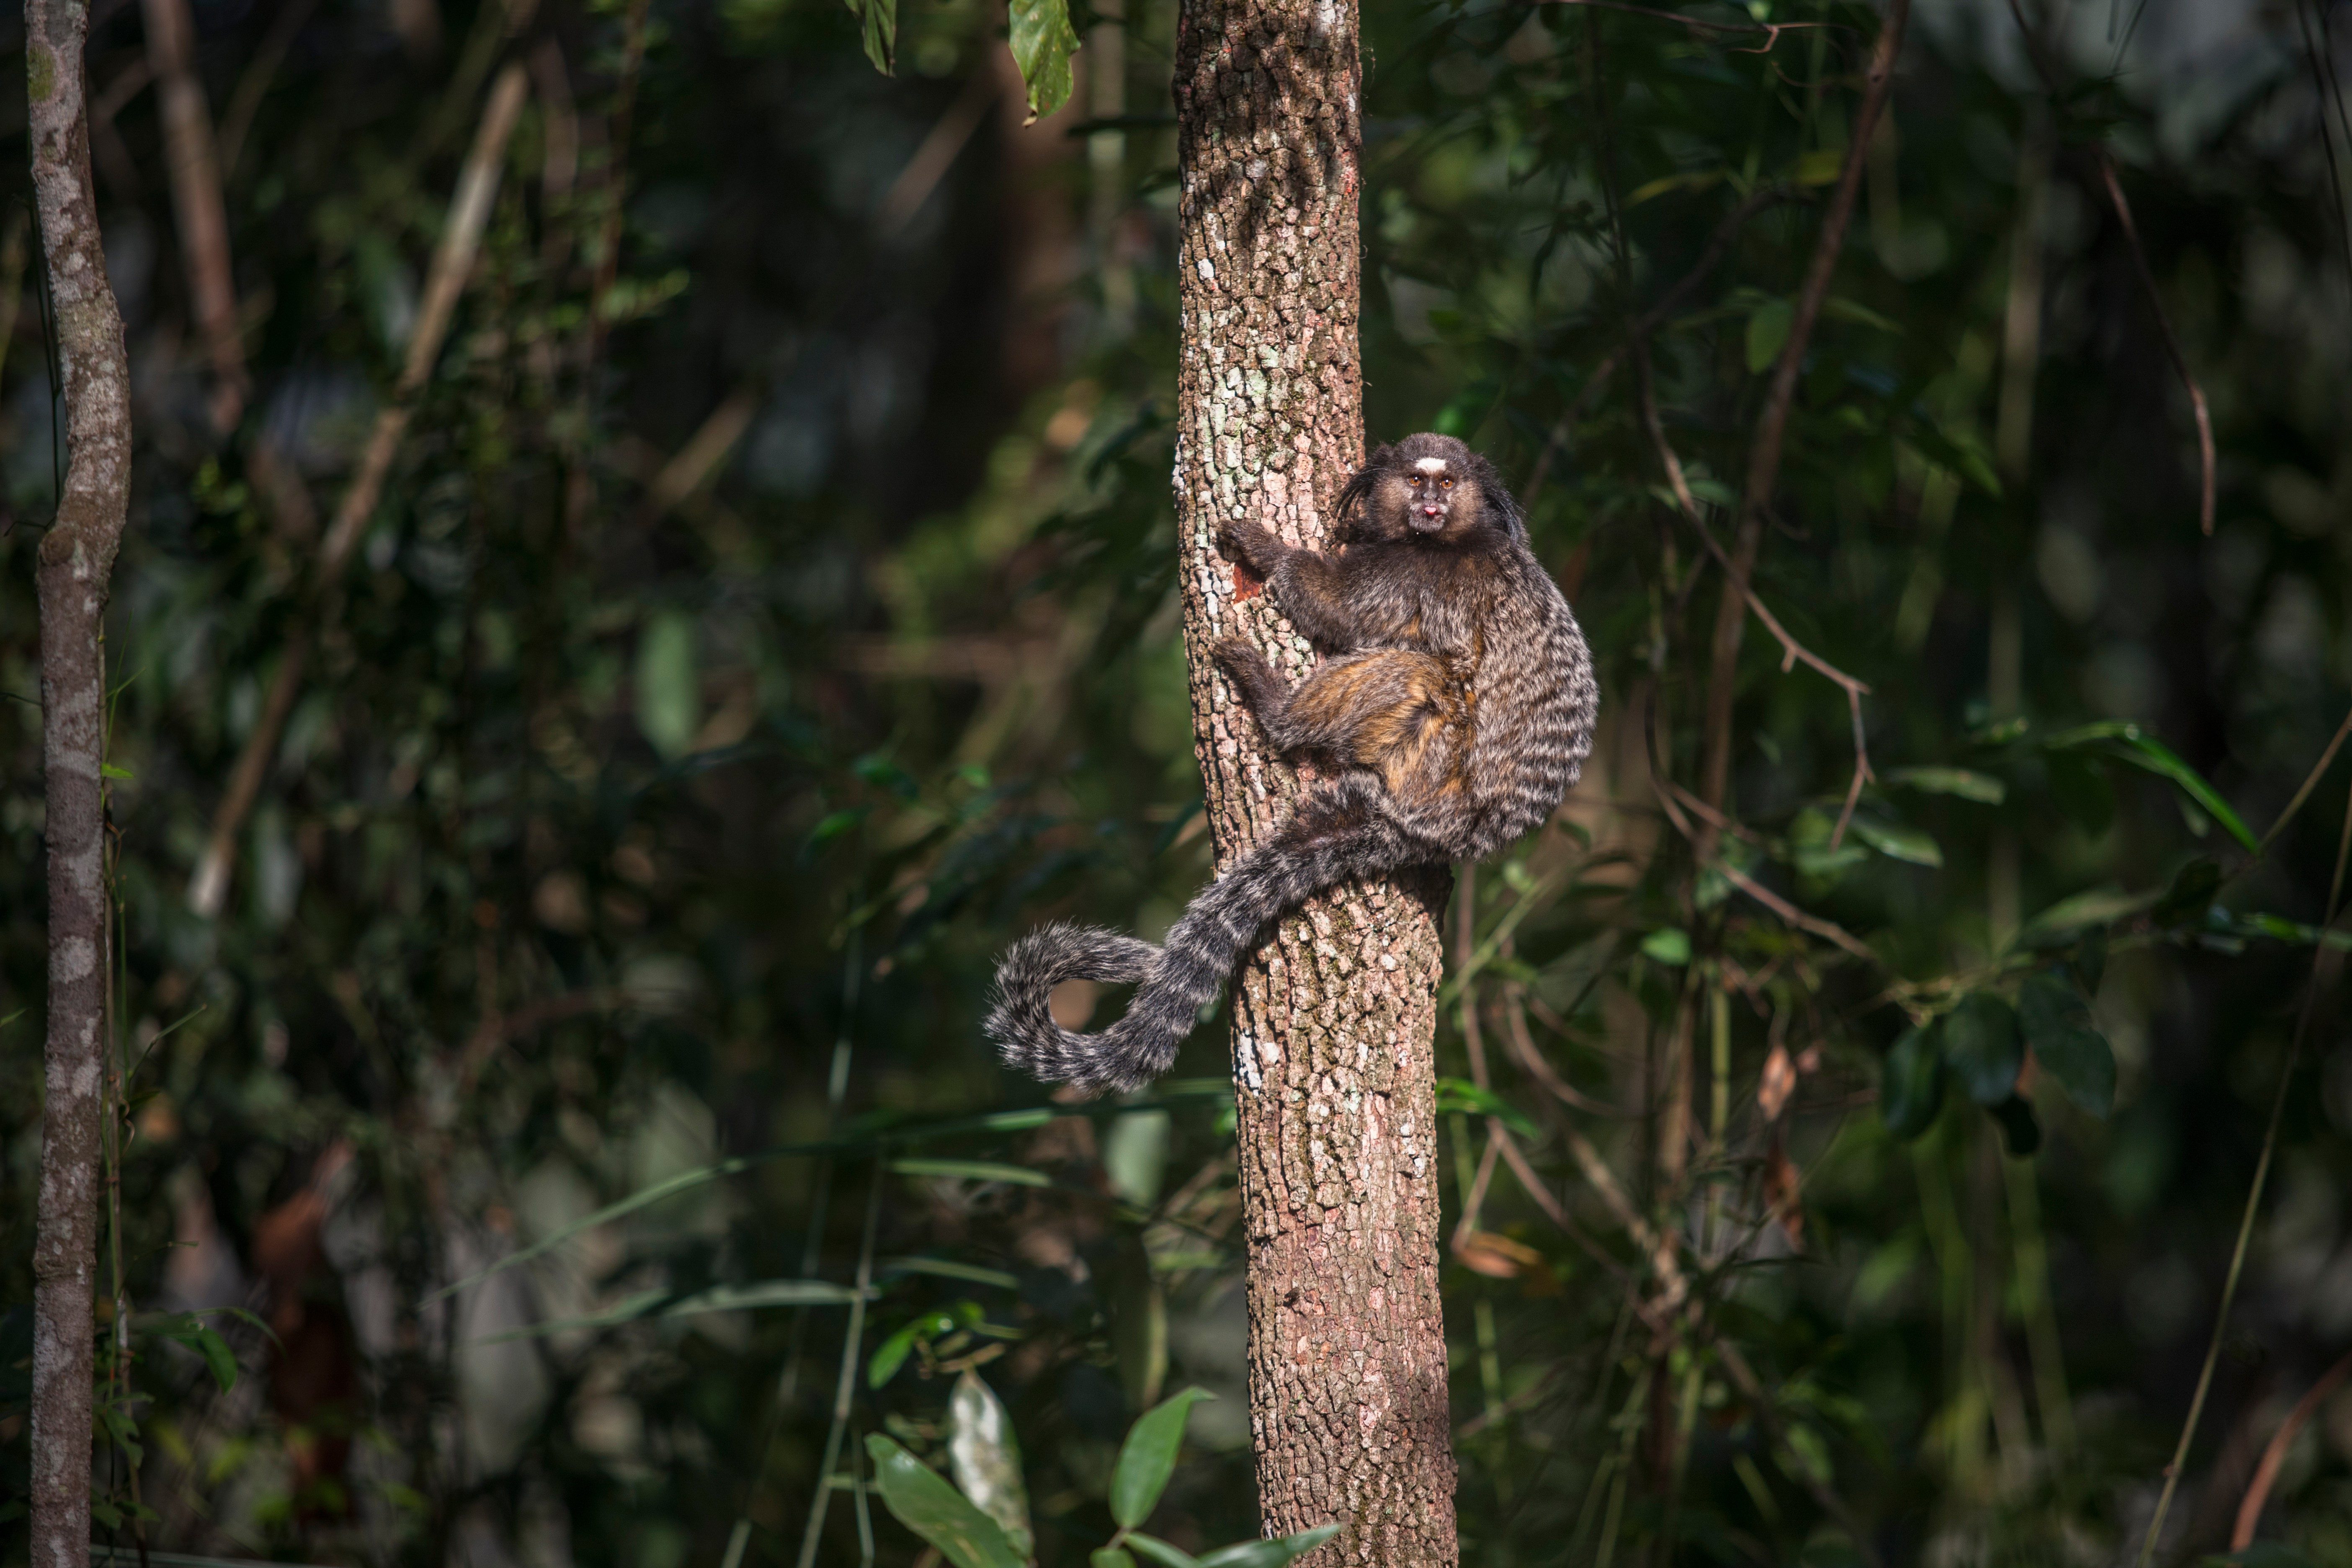  Imagem de um pequeno macaco pendura no tronco de uma árvore. Ao fundo, há uma densa vegetação.